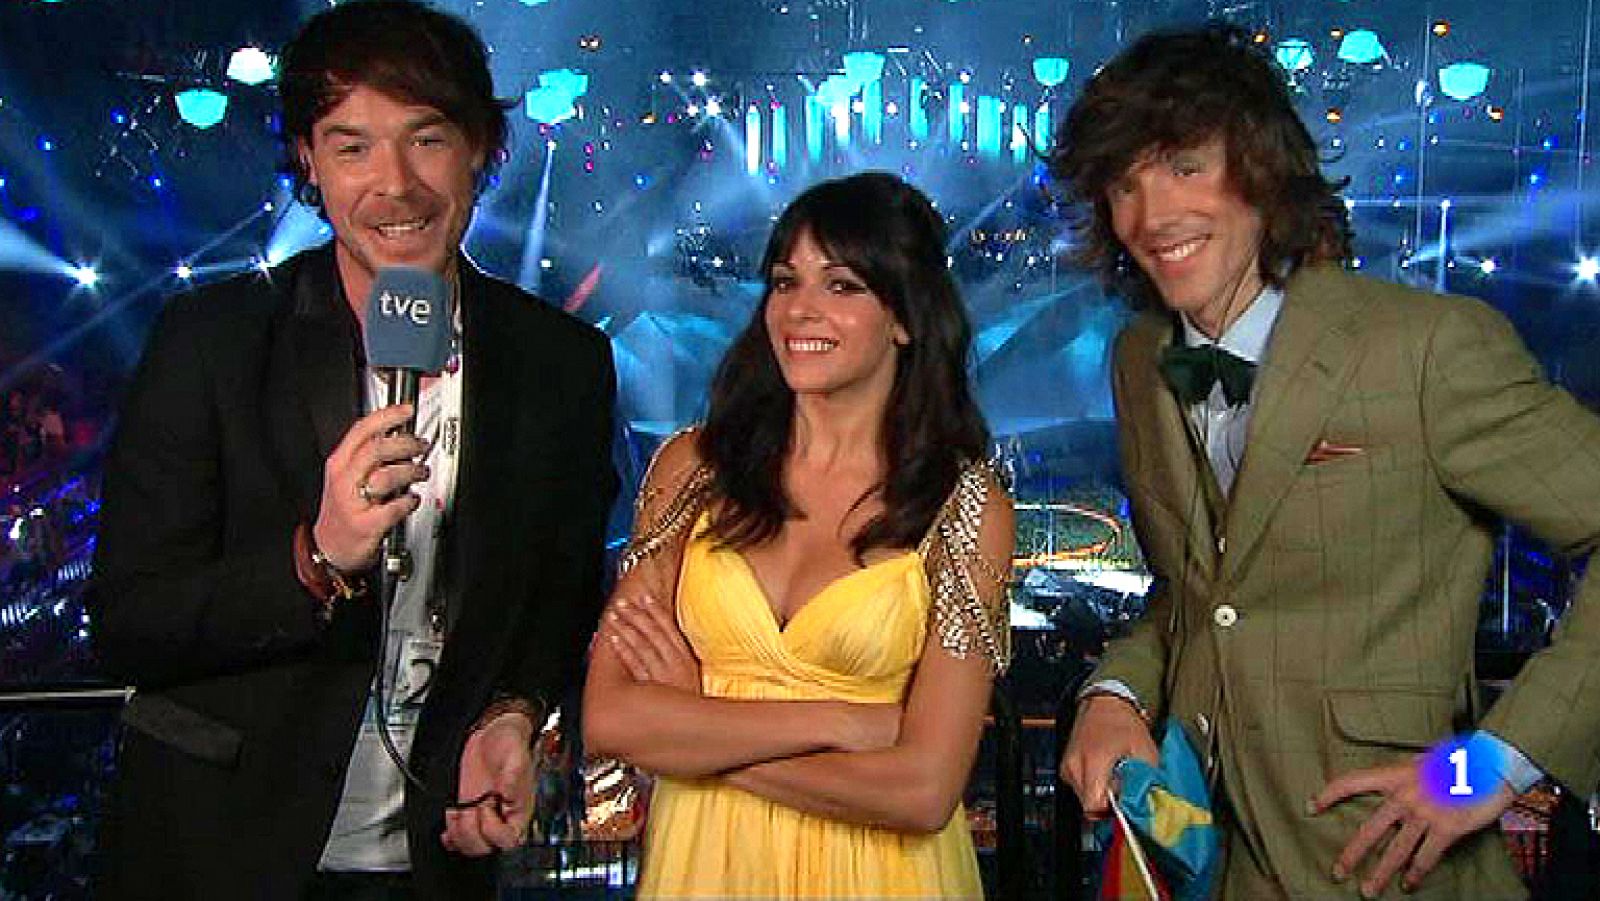 Final de Eurovisión 2013 - "No hemos tenido el final dulce que queríamos"